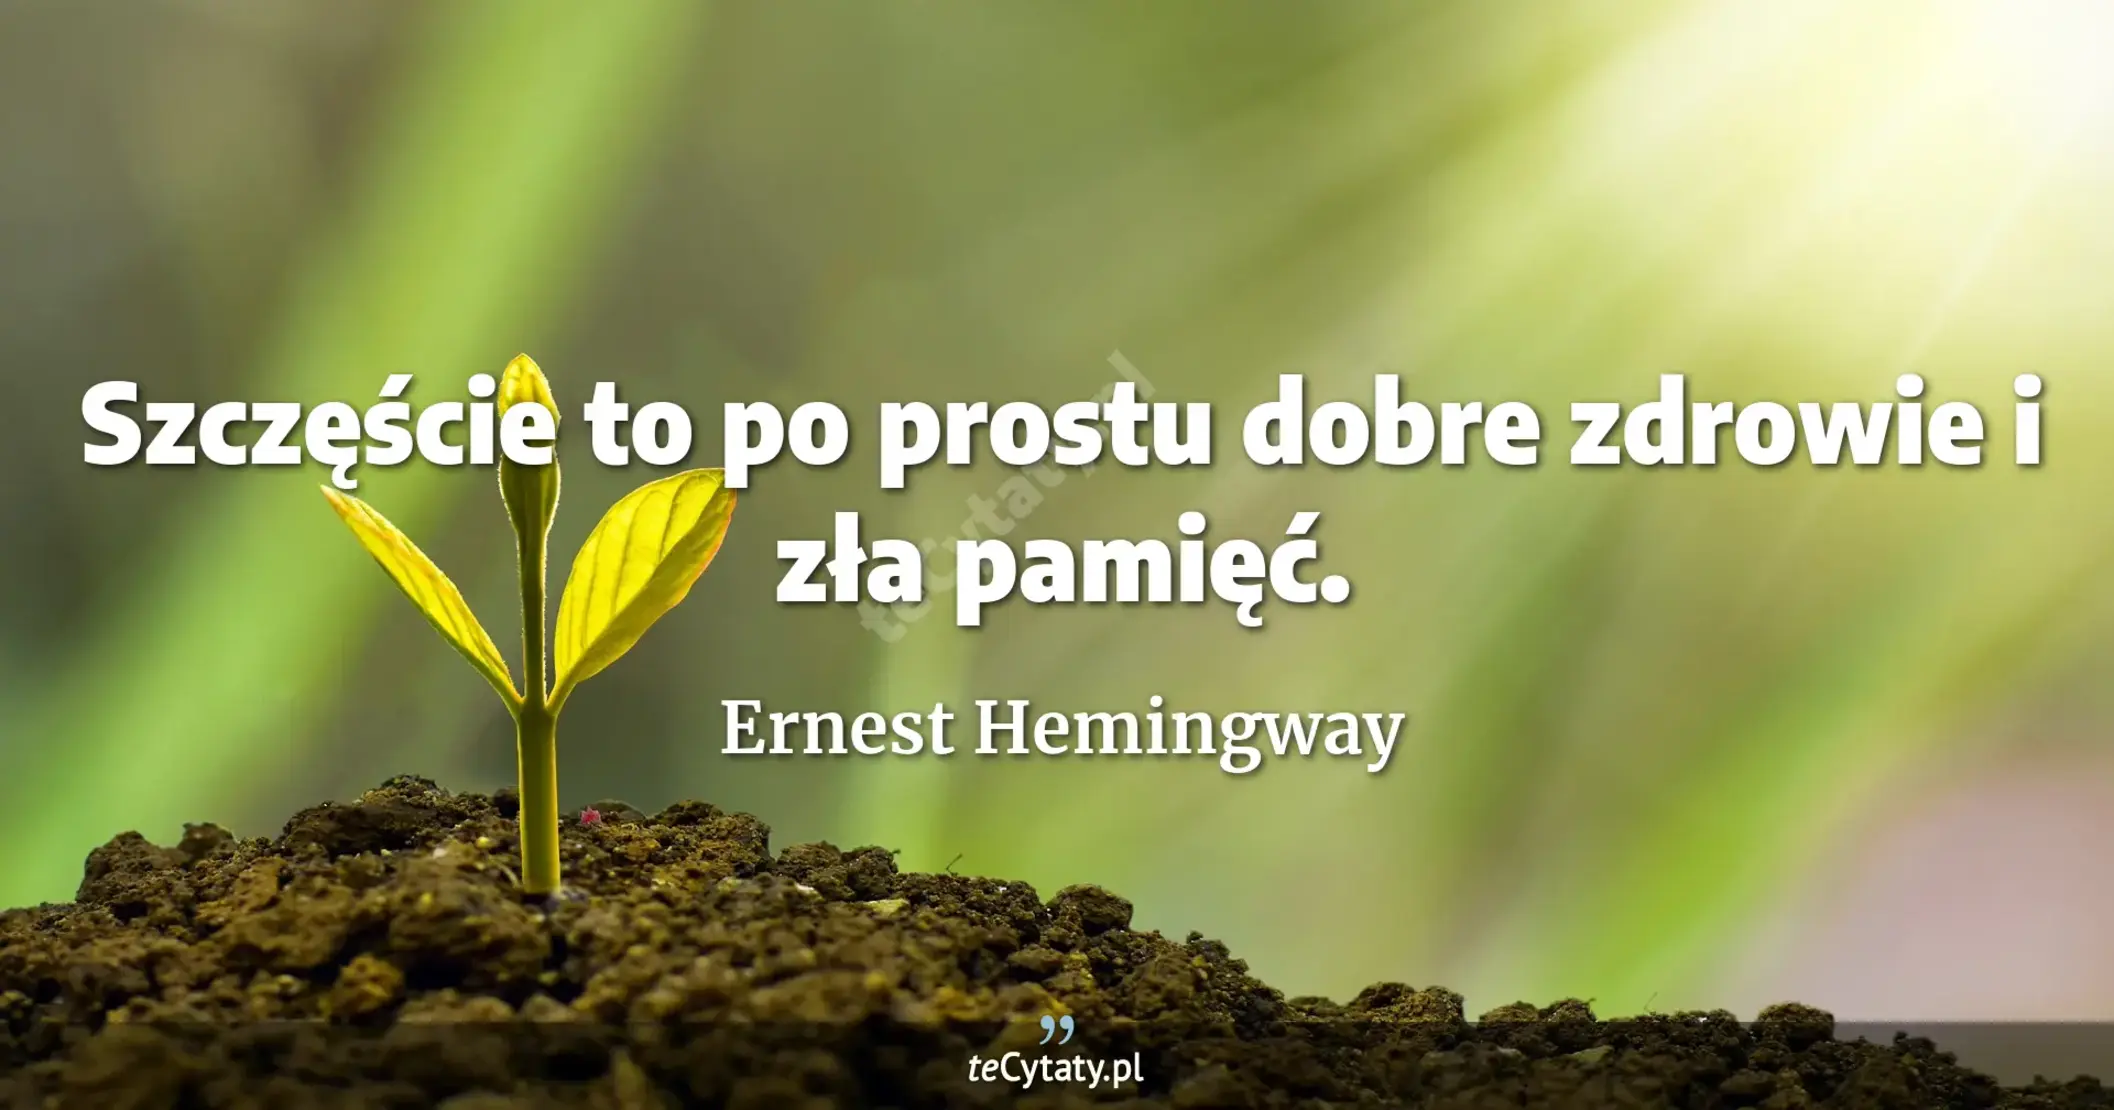 Szczęście to po prostu dobre zdrowie i zła pamięć. - Ernest Hemingway